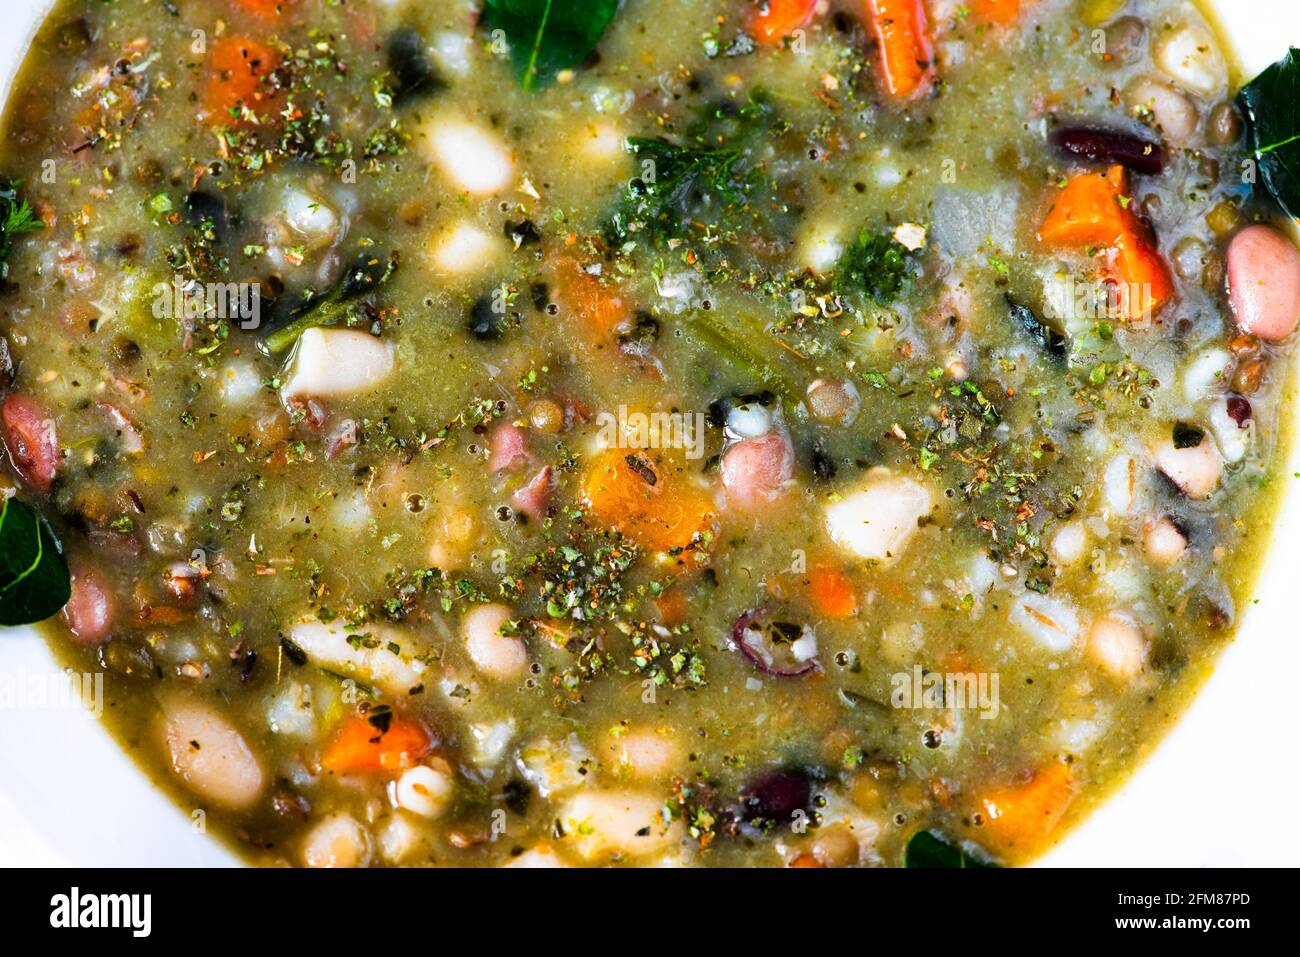 Densa zuppa di legumi toscani di tre tipi di fagioli, semole di grano e verdure, sano pasto vegetariano o vegano, primo piano. Foto Stock